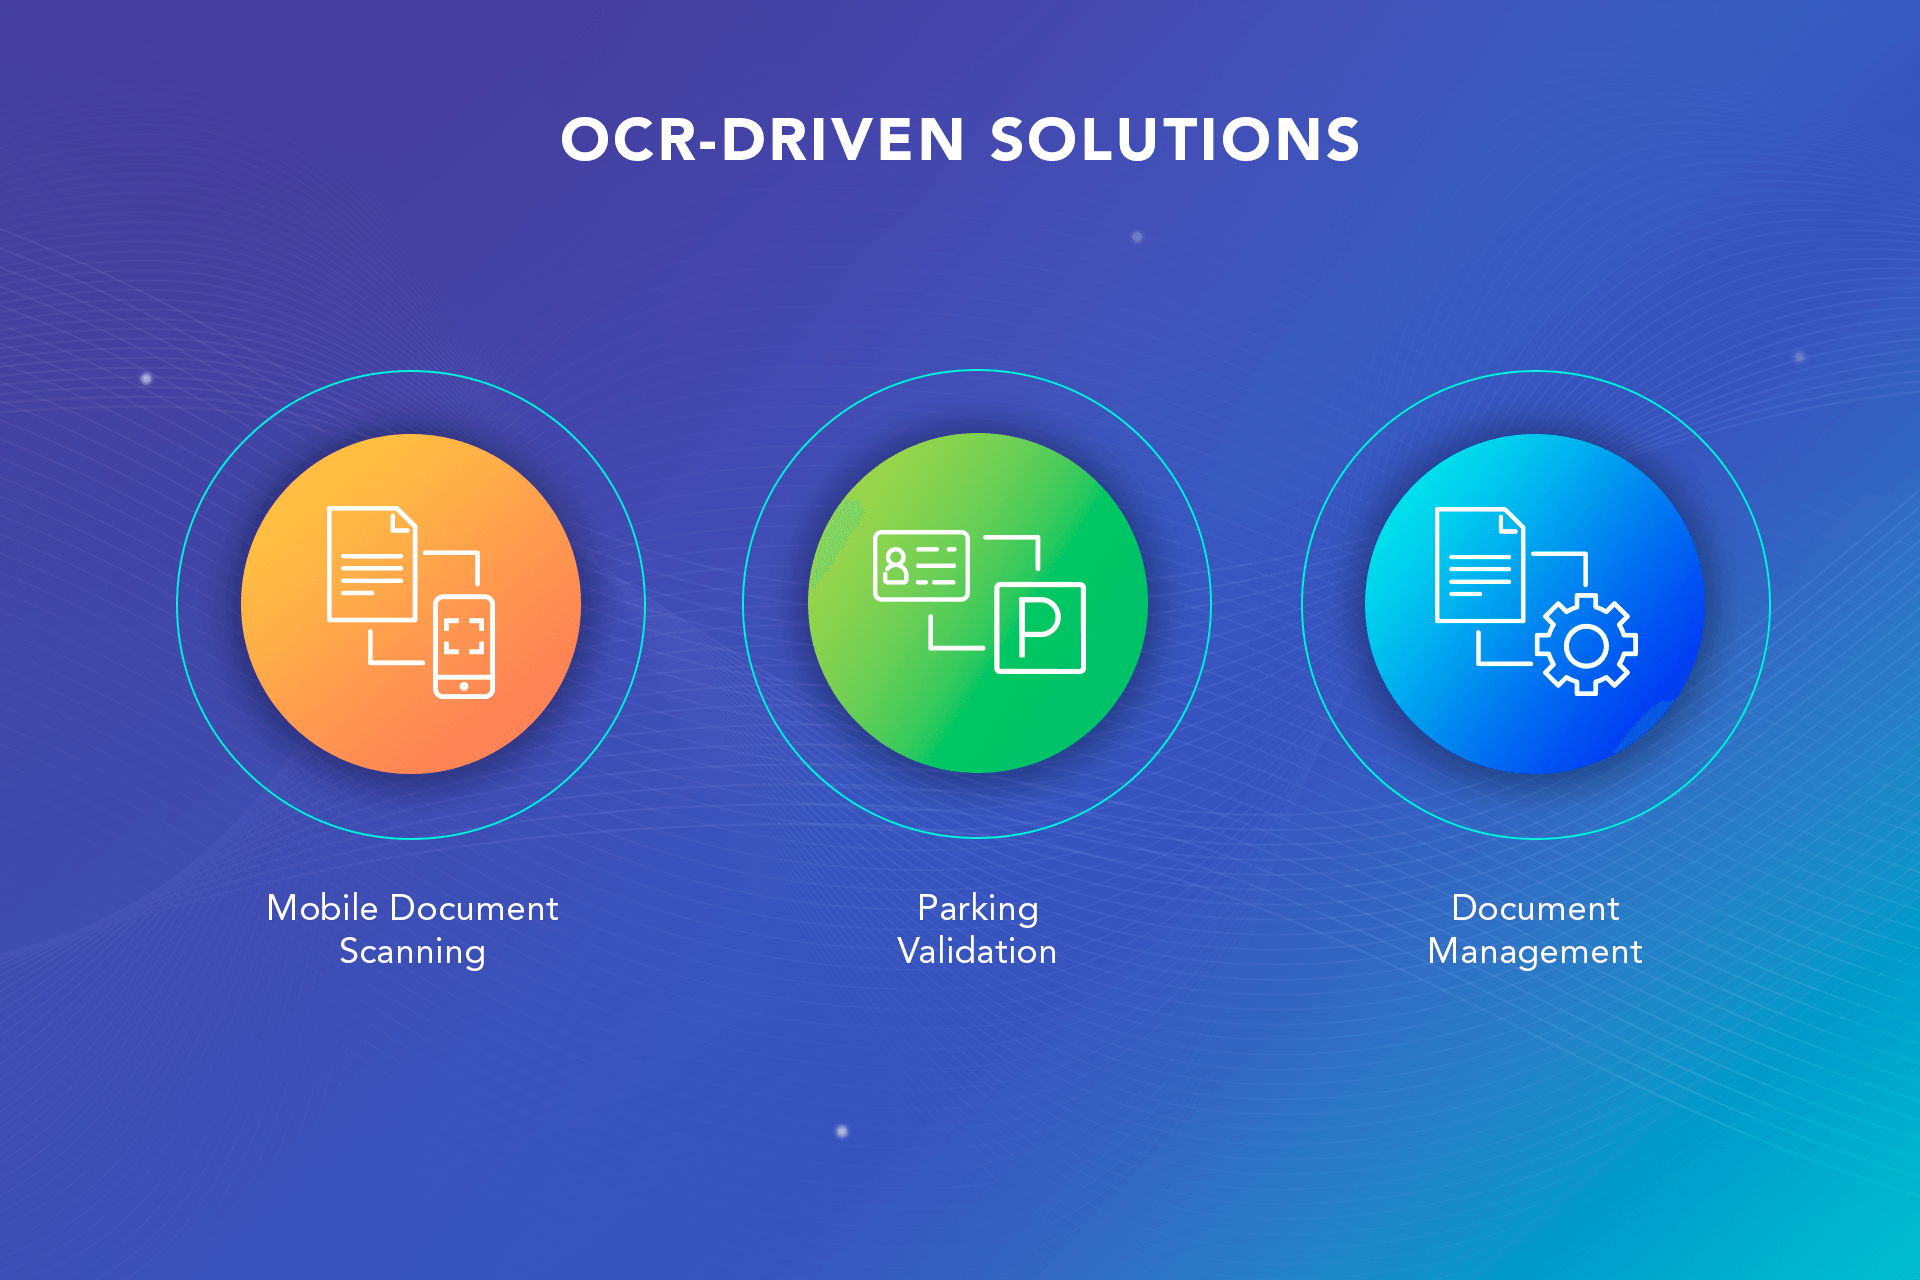 OCR-driven solutions